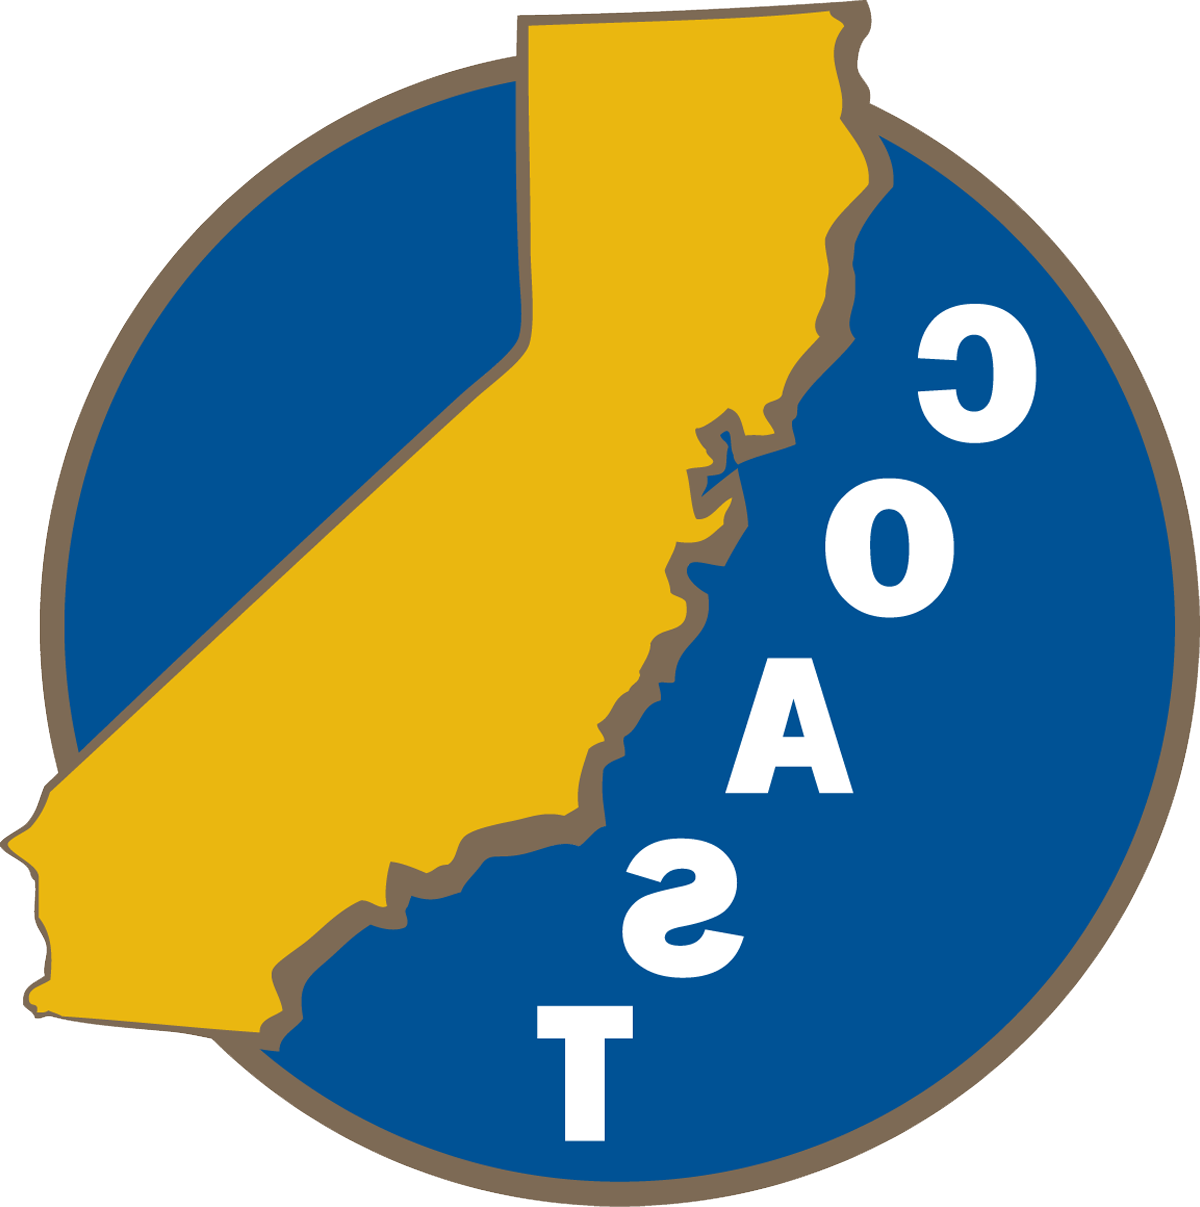 COAST Logo